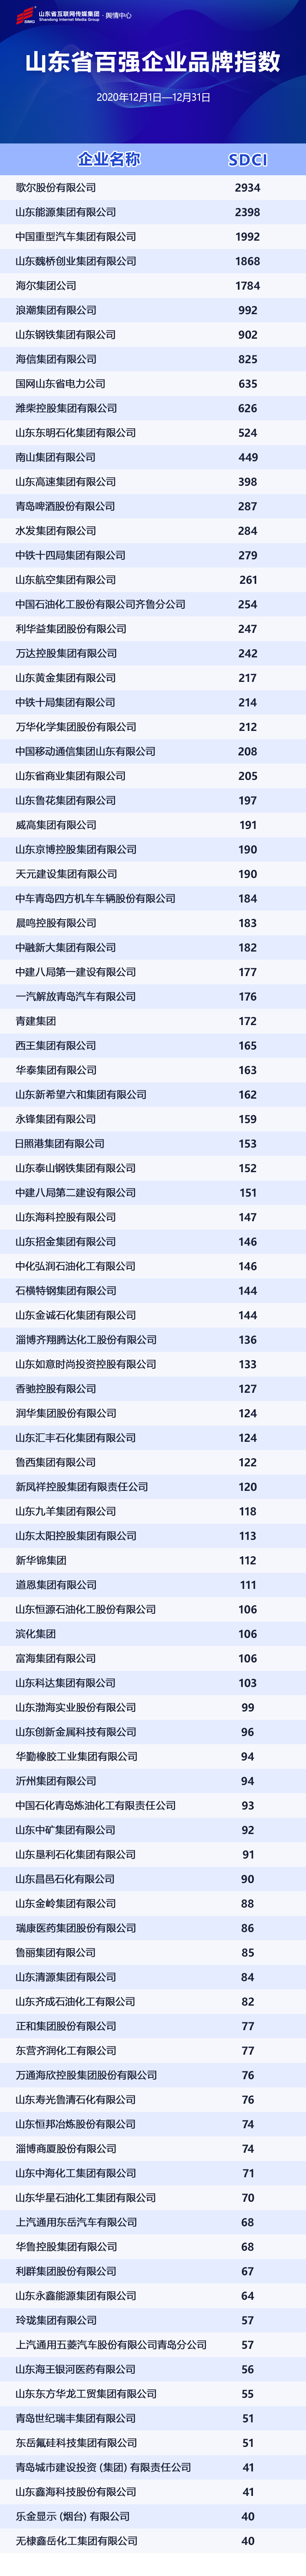 山东省百强企业品牌指数（SDCI）发布 歌尔、山东能源、中国重汽名列前三